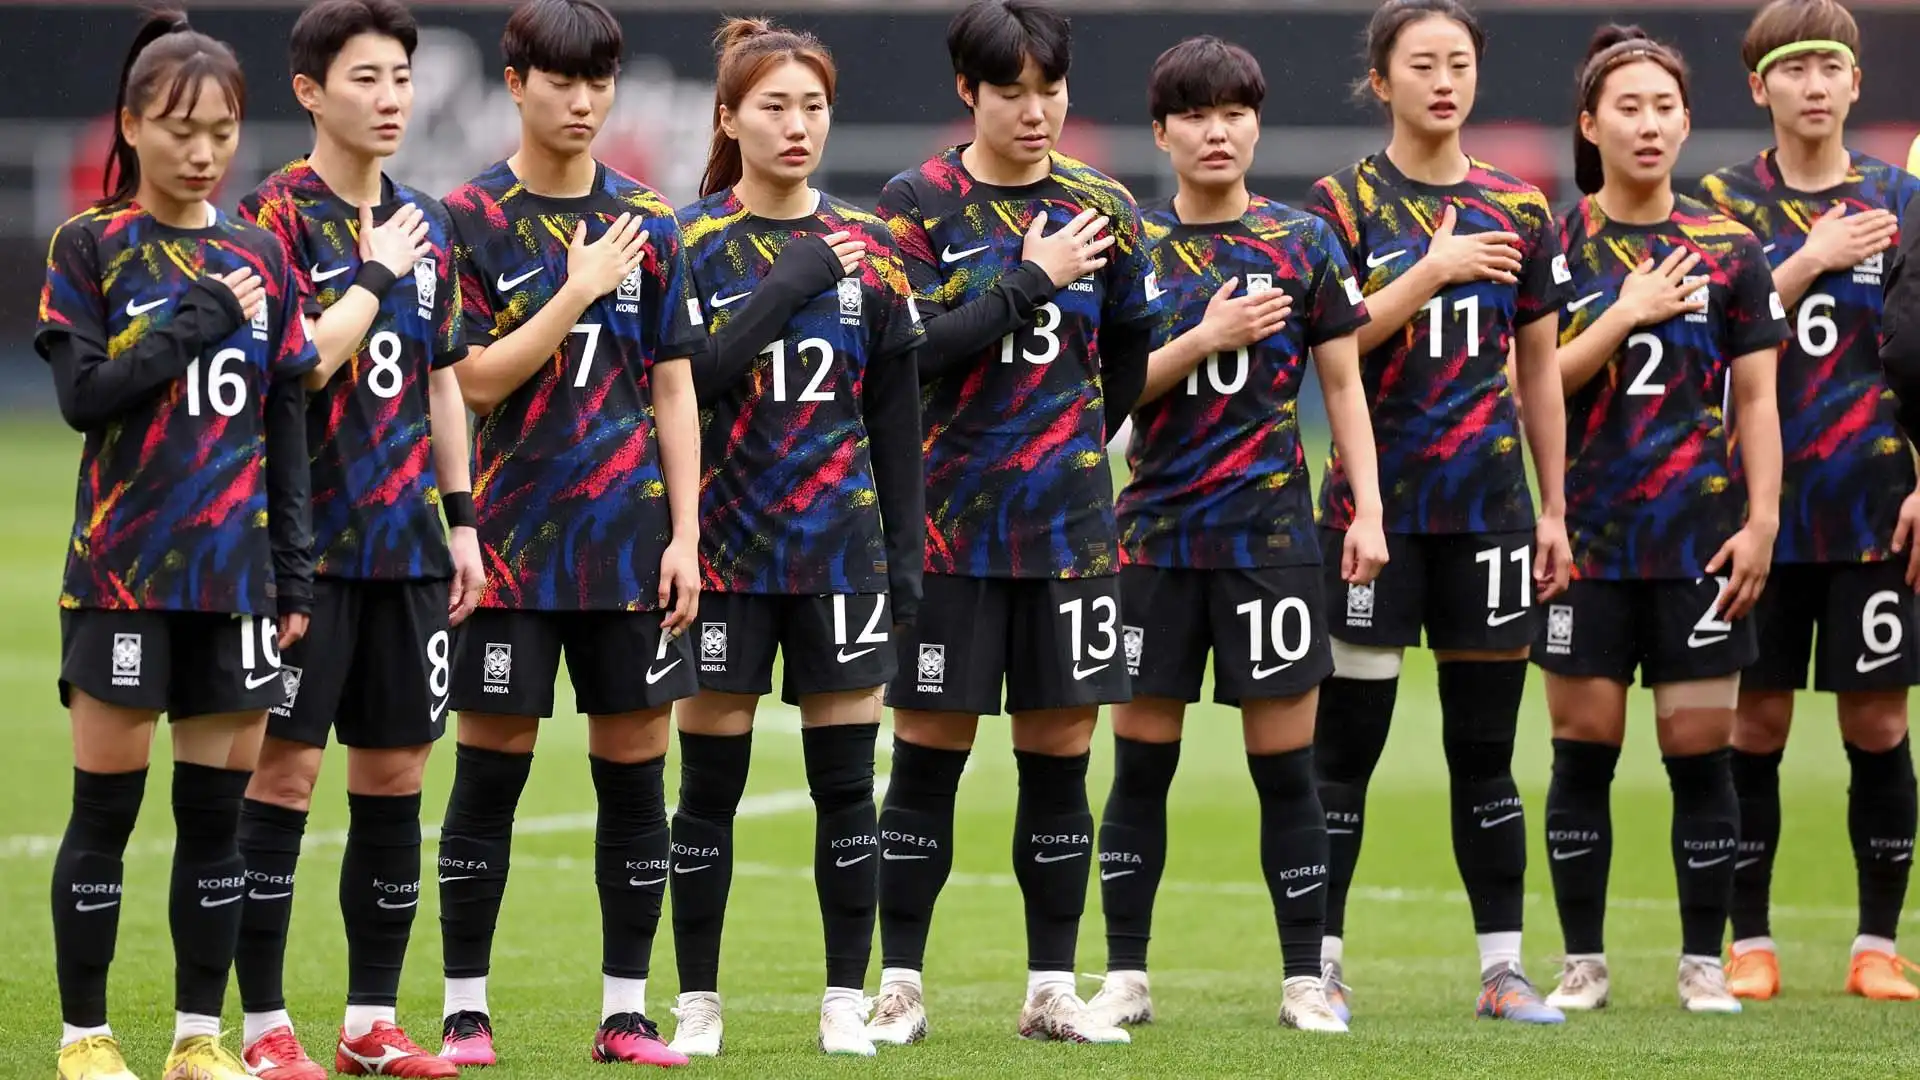 La Corea del Sud, nelle due prime gare, ha perso con Inghilterra e Belgio